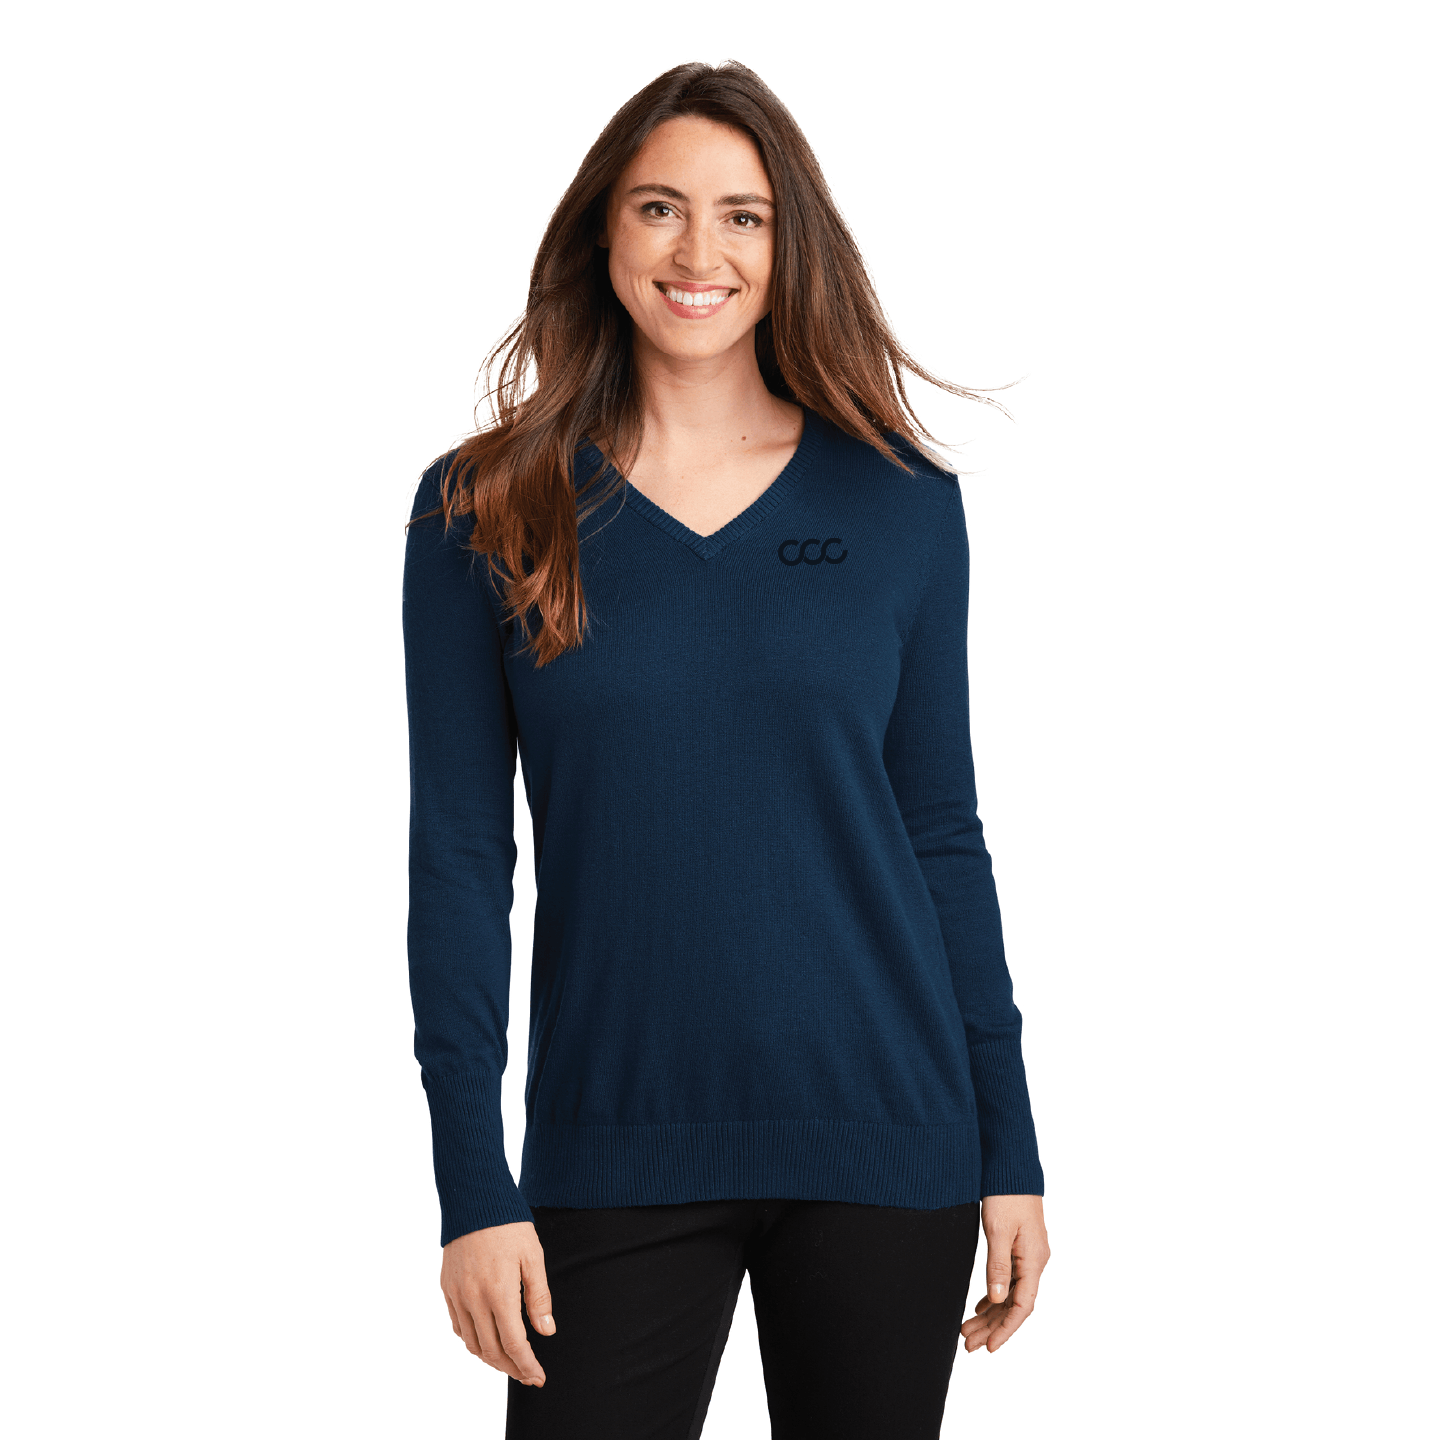 Ladies V-Neck Sweater